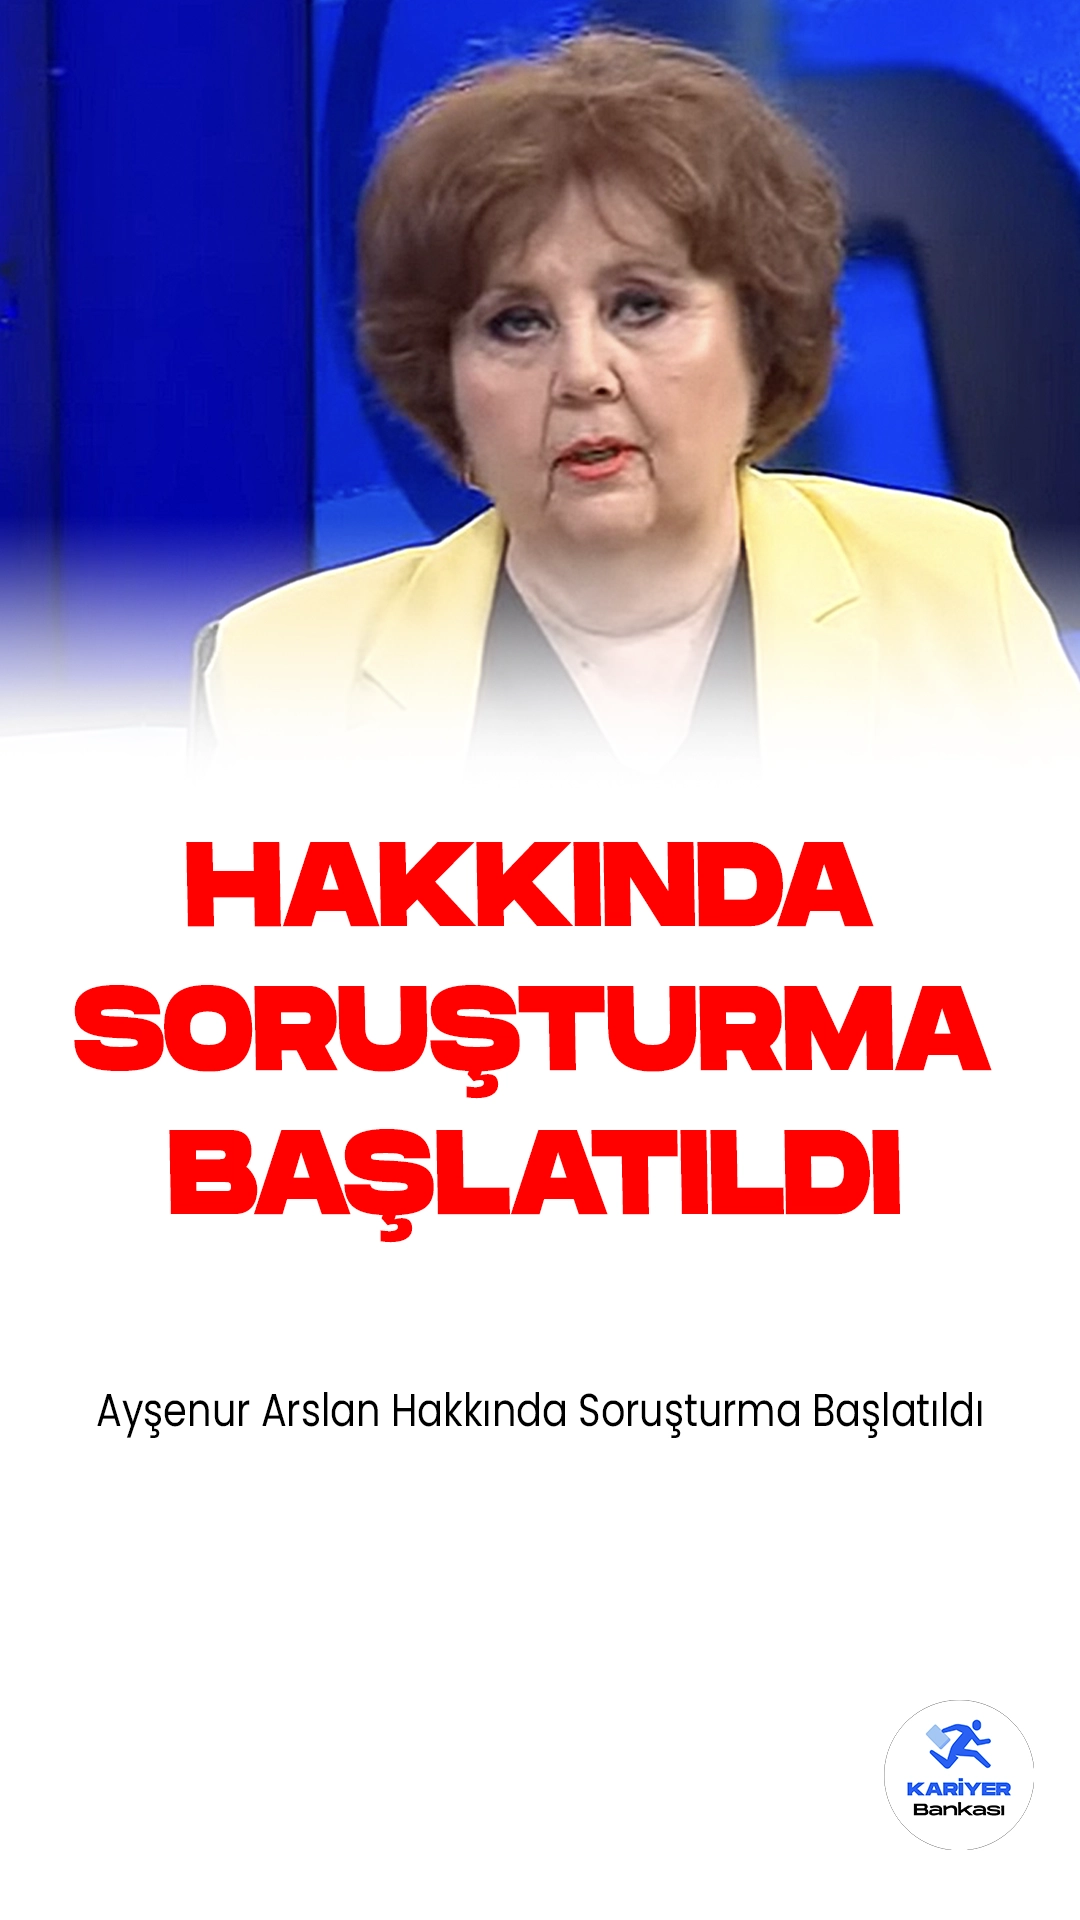 Ayşenur Arslan Hakkında Soruşturma Başlatıldı.İstanbul Cumhuriyet Başsavcılığı, Ayşenur Arslan'a  "terör örgütü propagandası yapma" ve "suçu ve suçluyu övme" suçlarından resen soruşturma başlattı.